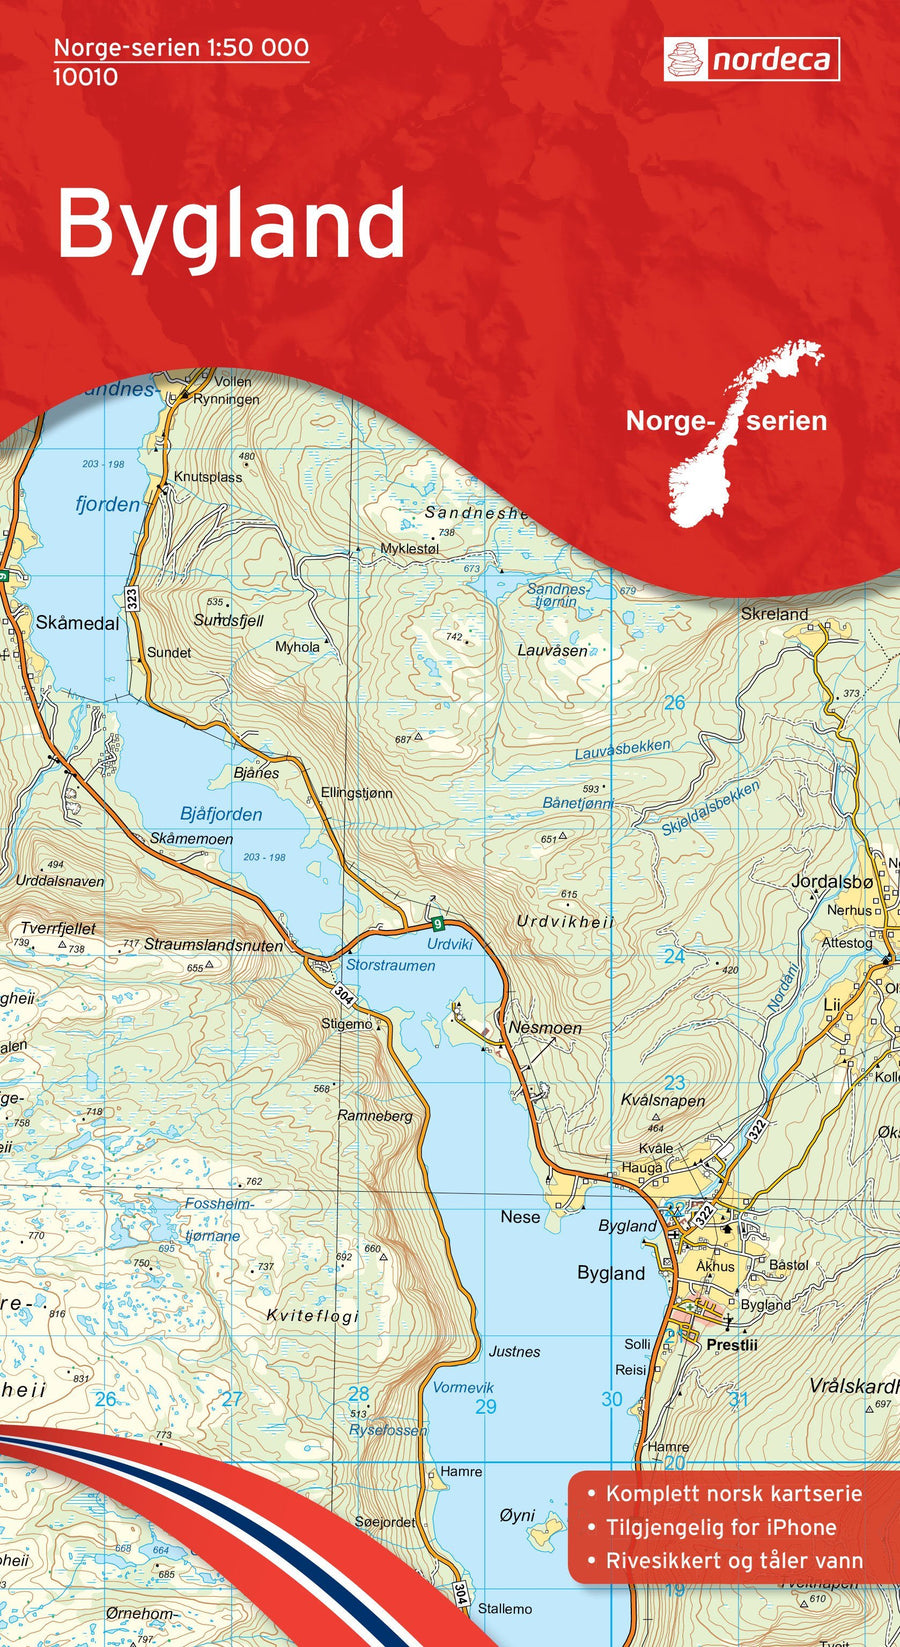 Carte de randonnée n° 10010 - Bygland (Norvège) | Nordeca - Norge-serien carte pliée Nordeca 